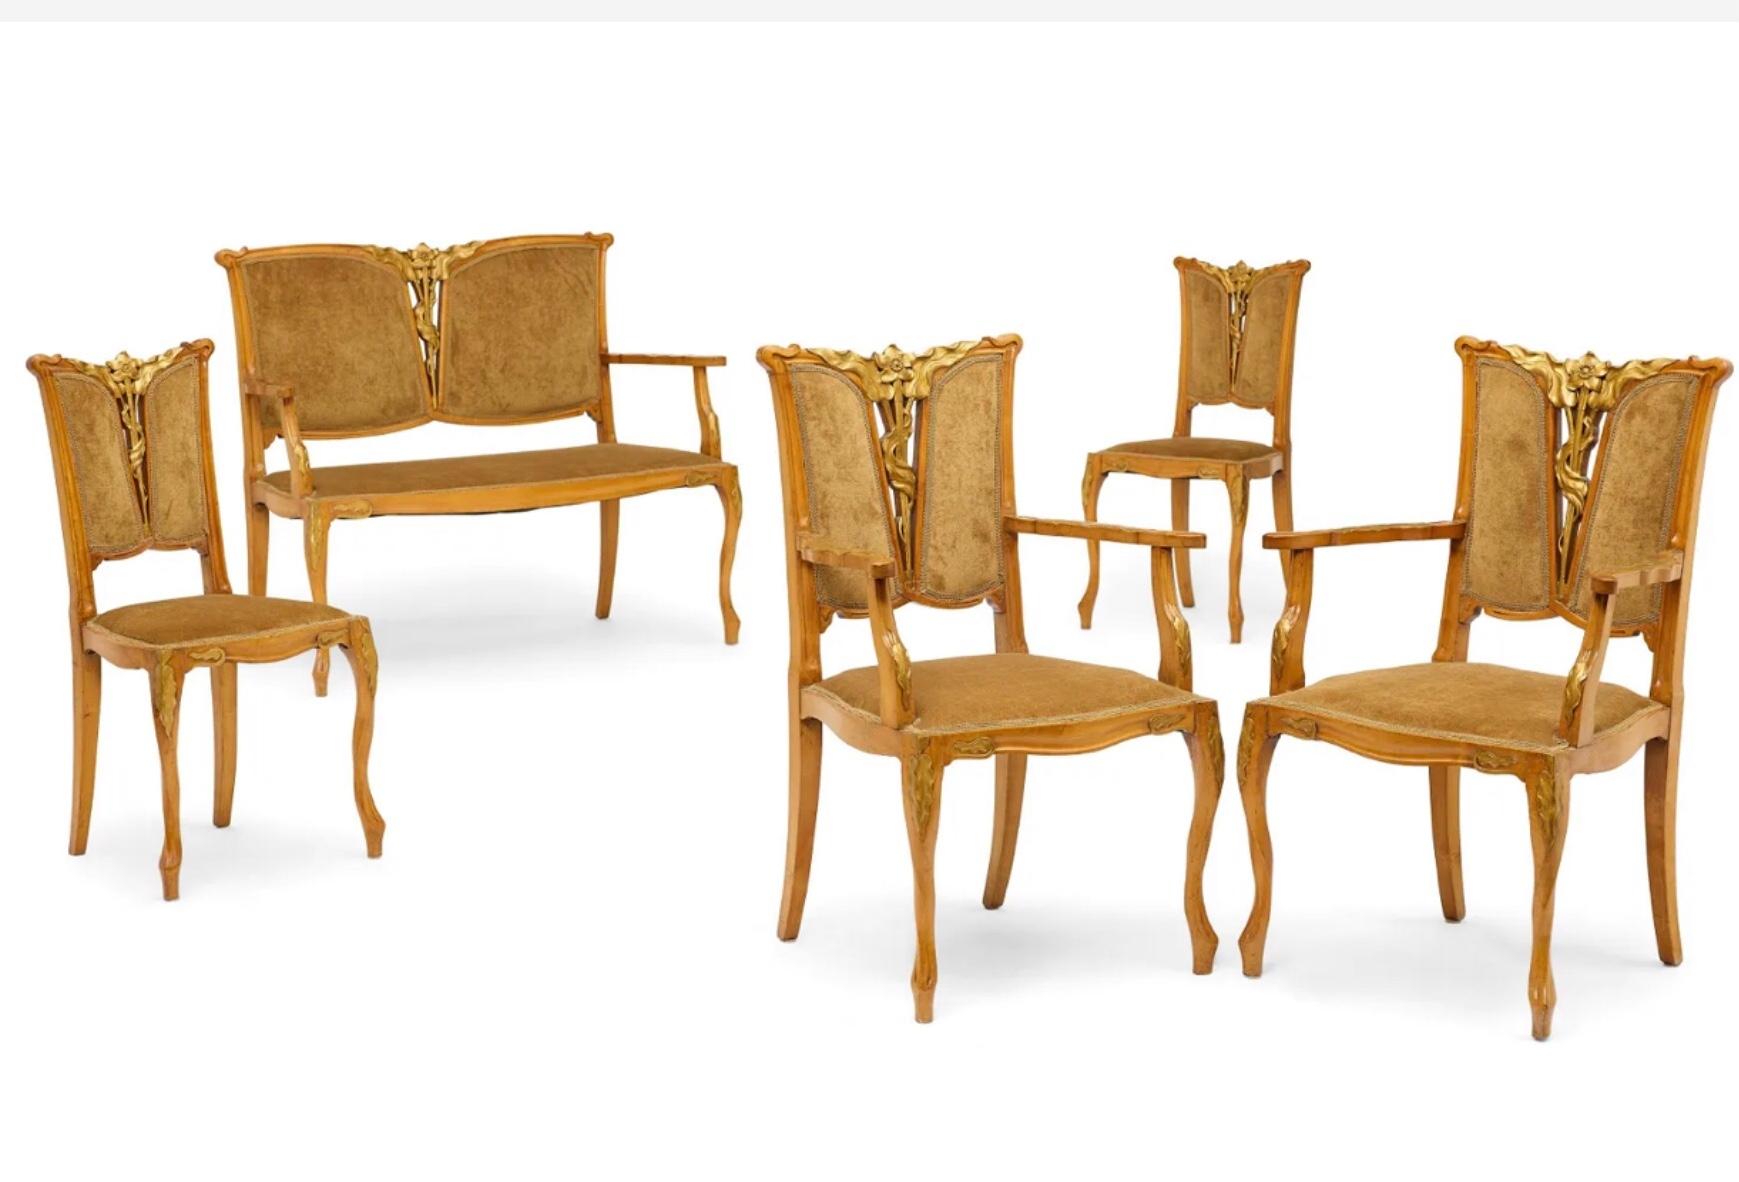 GEORGES DE FEURE (1868-1943), 
Suite de salon cinq pièces
vers 1900

En noyer et dorure à la feuille, comprenant un canapé, deux fauteuils et deux chaises. Il est rare de trouver un ensemble complet de meubles Art nouveau de salon d'époque et le